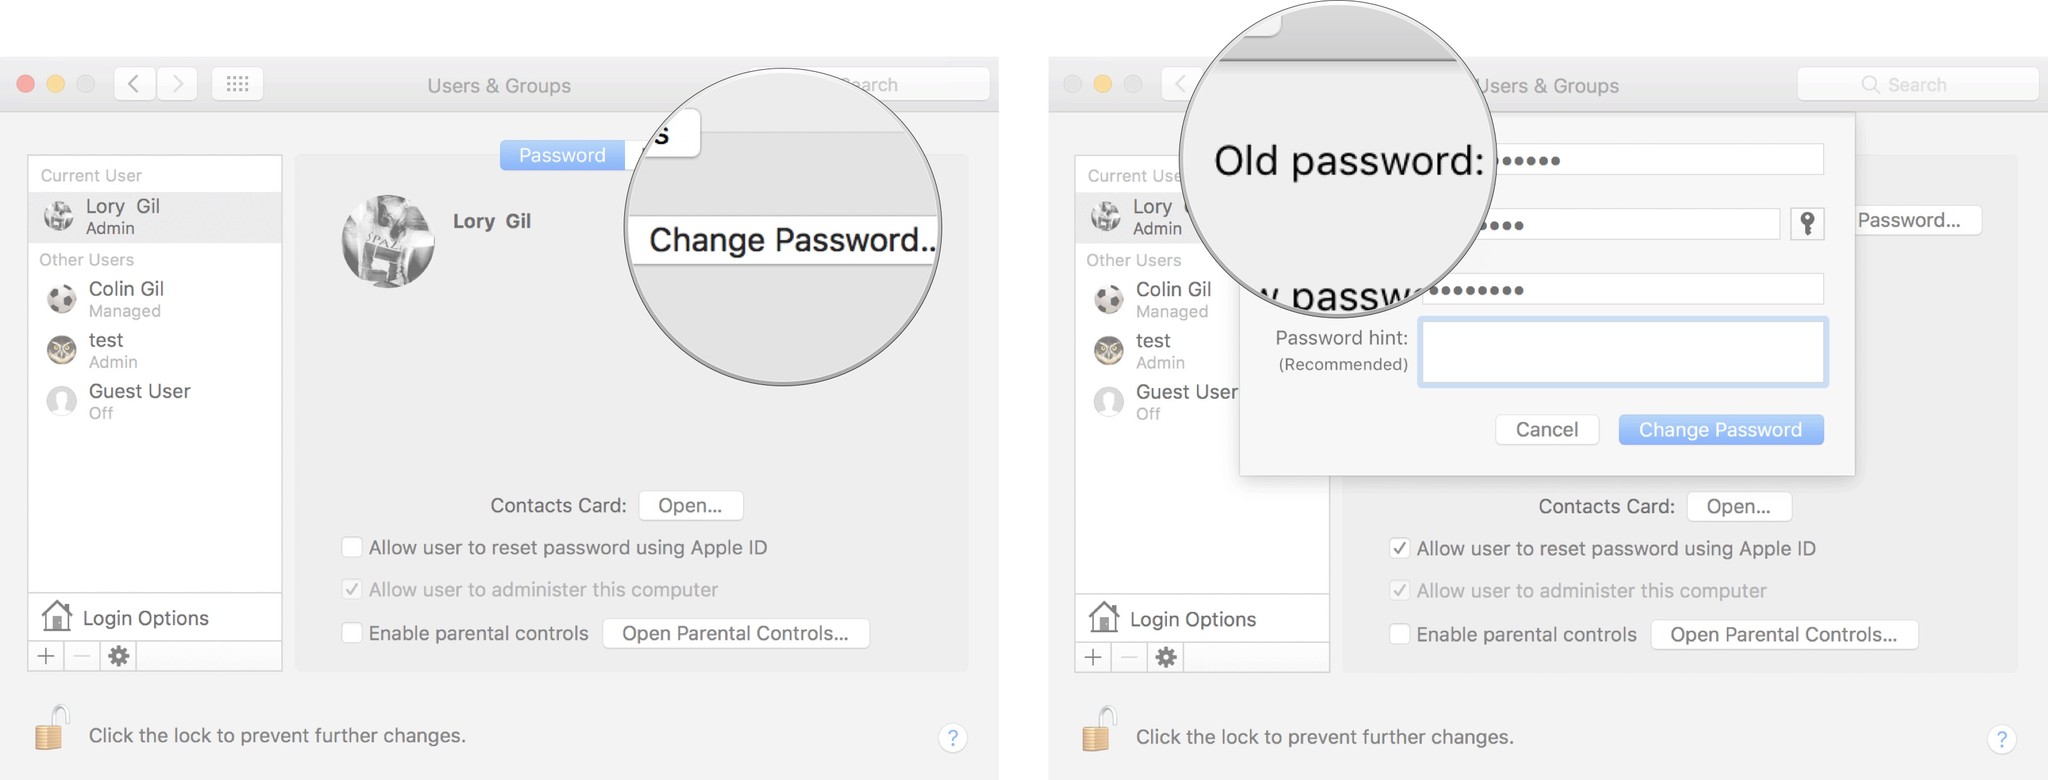 Old password. Логин в Мак. Как сменить пароль на маке при входе. Как поменять пароль на почте на маке. Eбрать пароль входа на Mac Air.